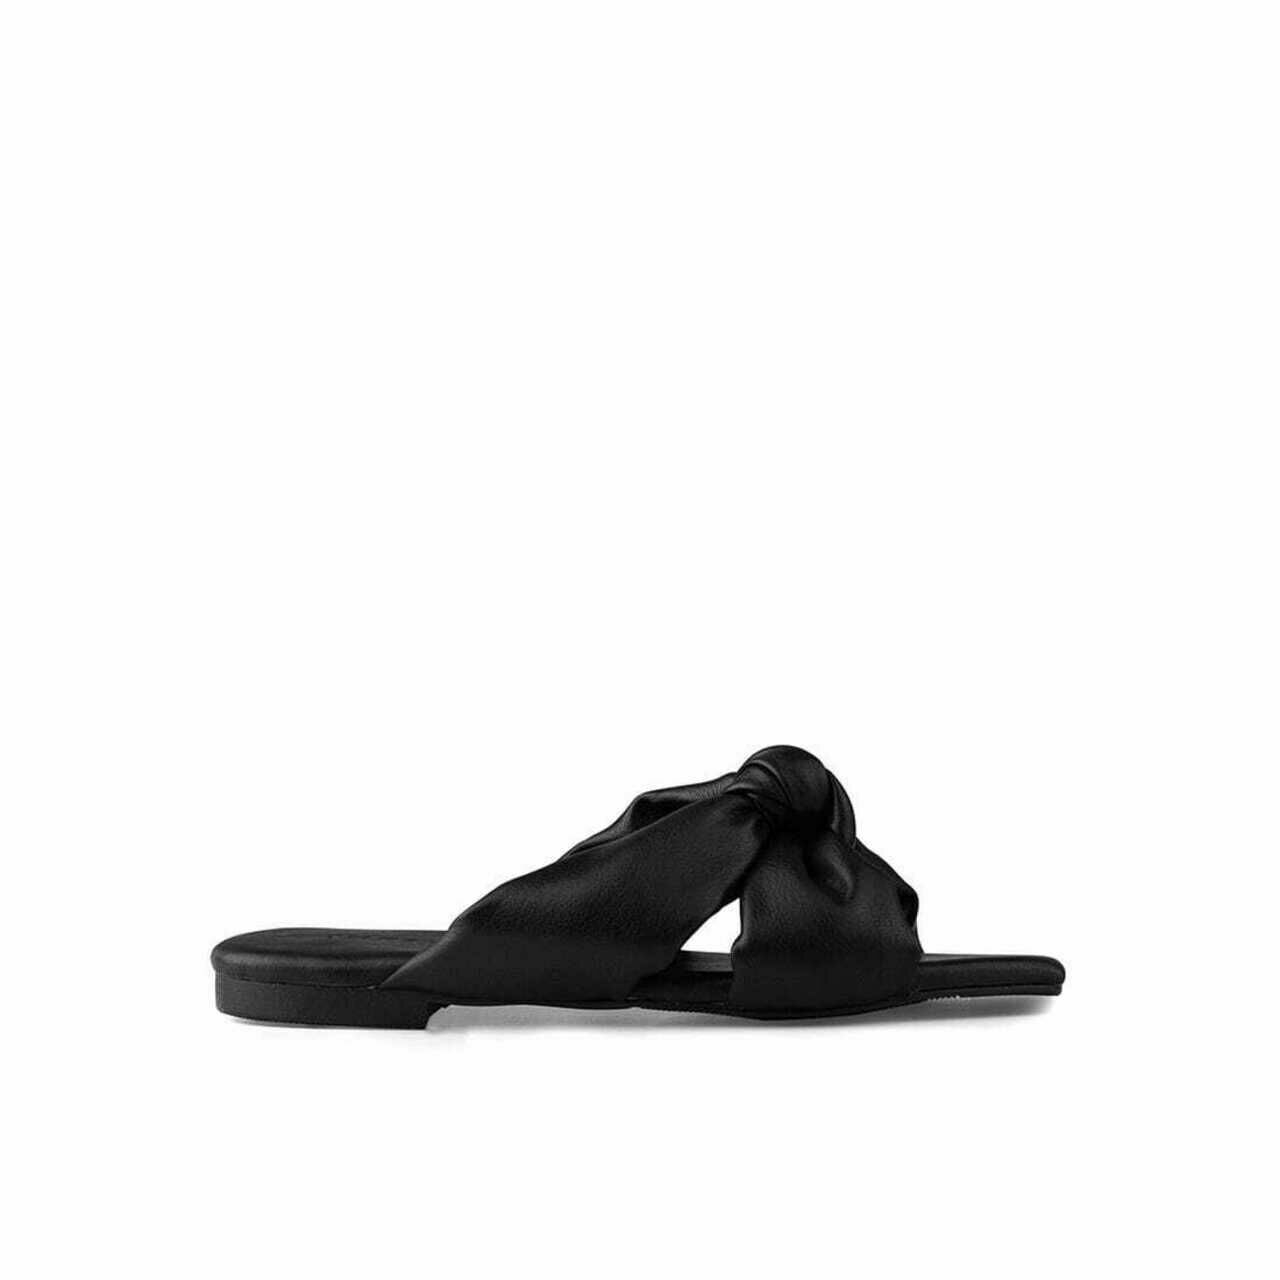 INPACA Black Sandals